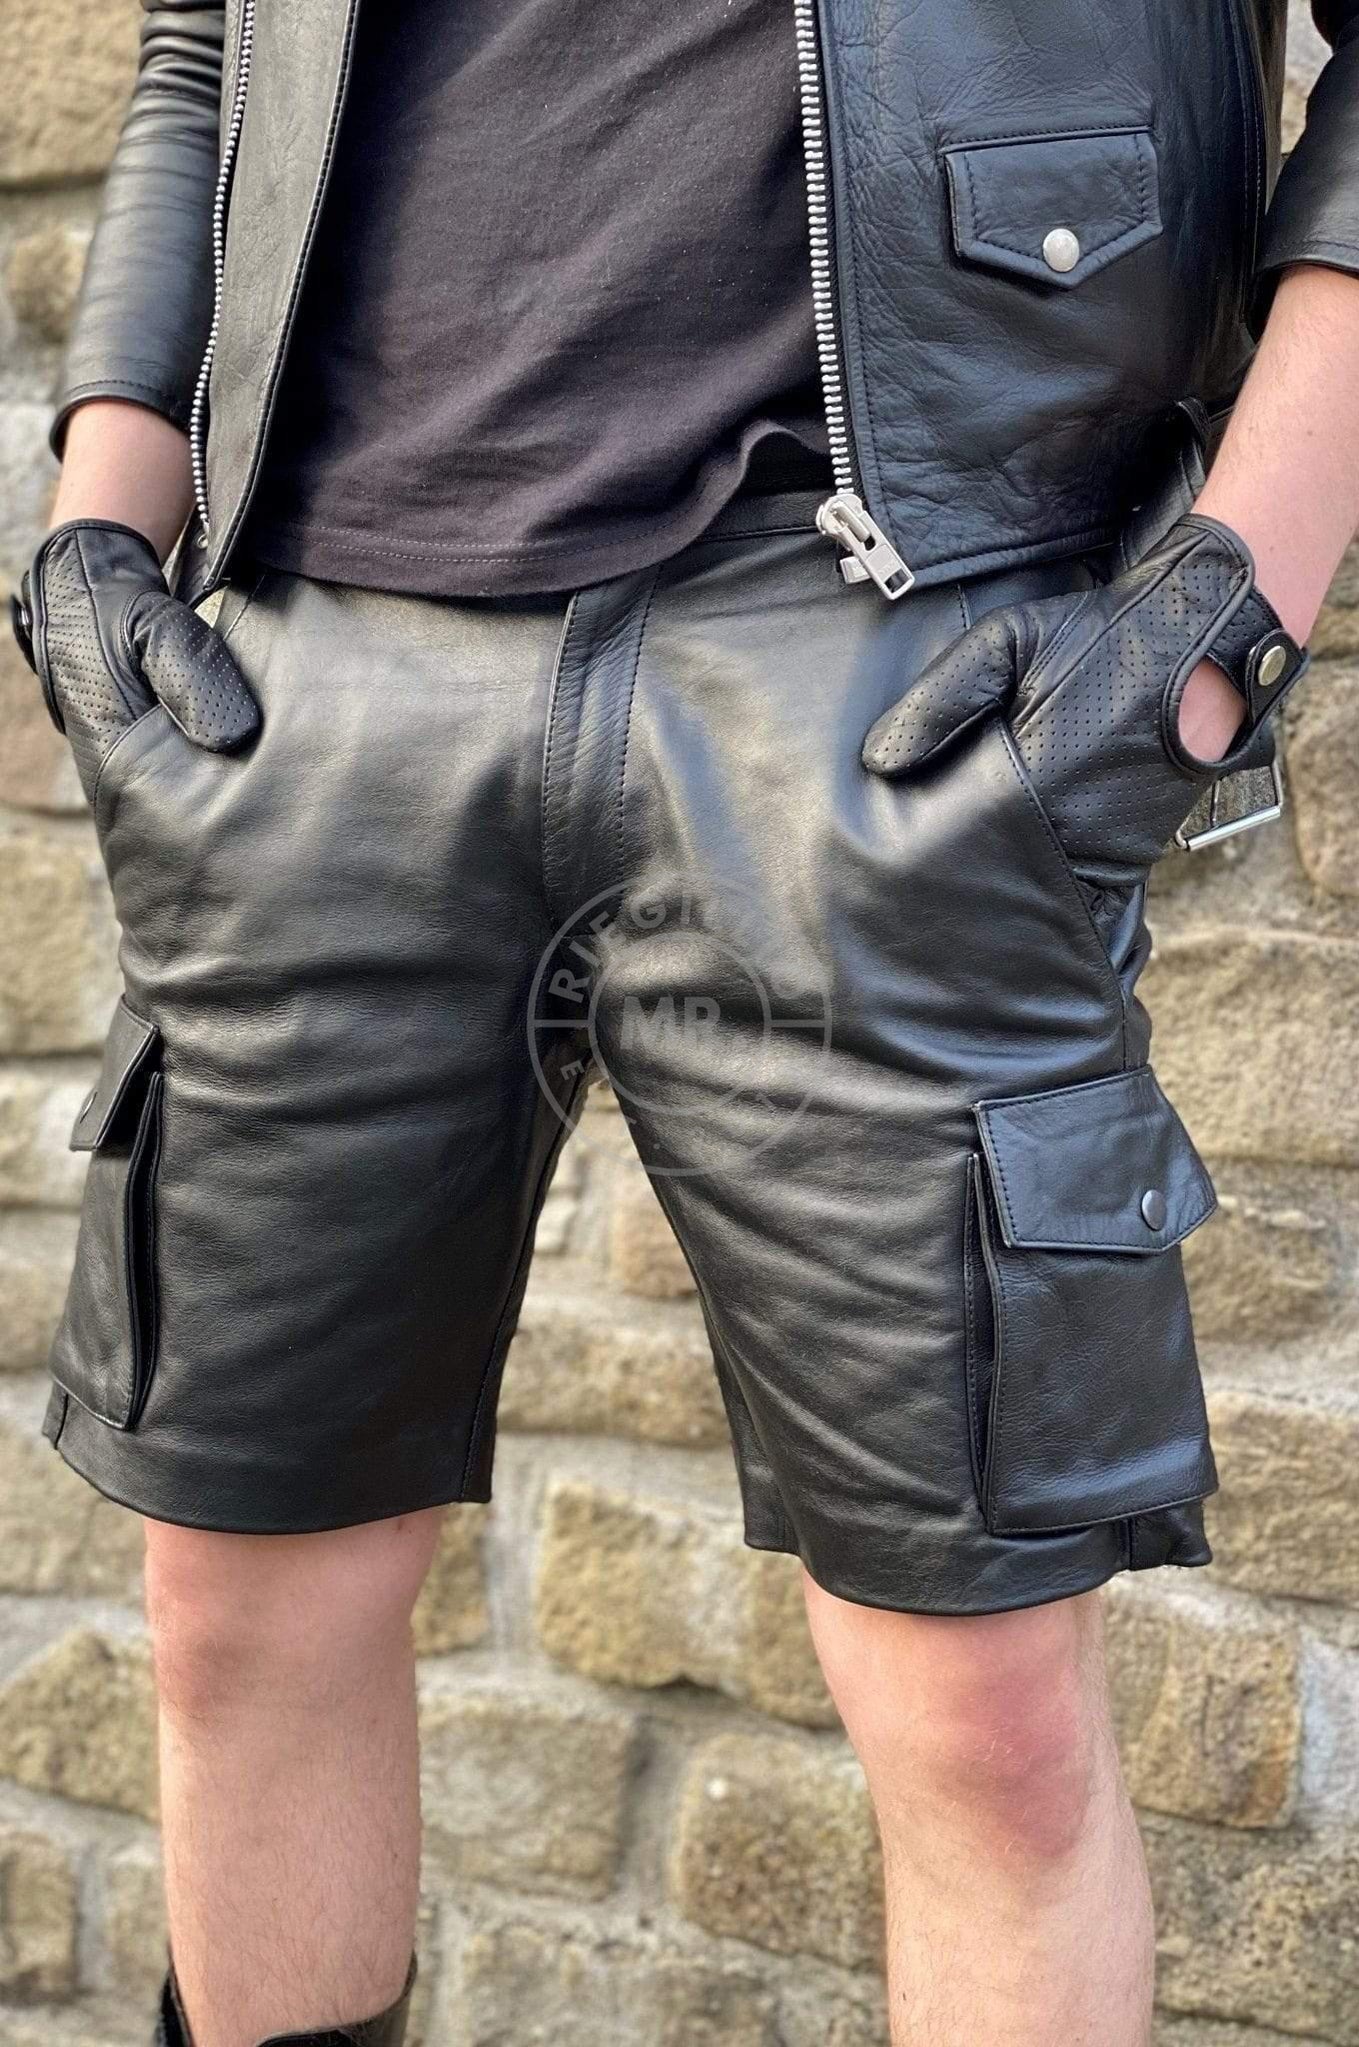 Black Leather Cargo Short at MR. Riegillio